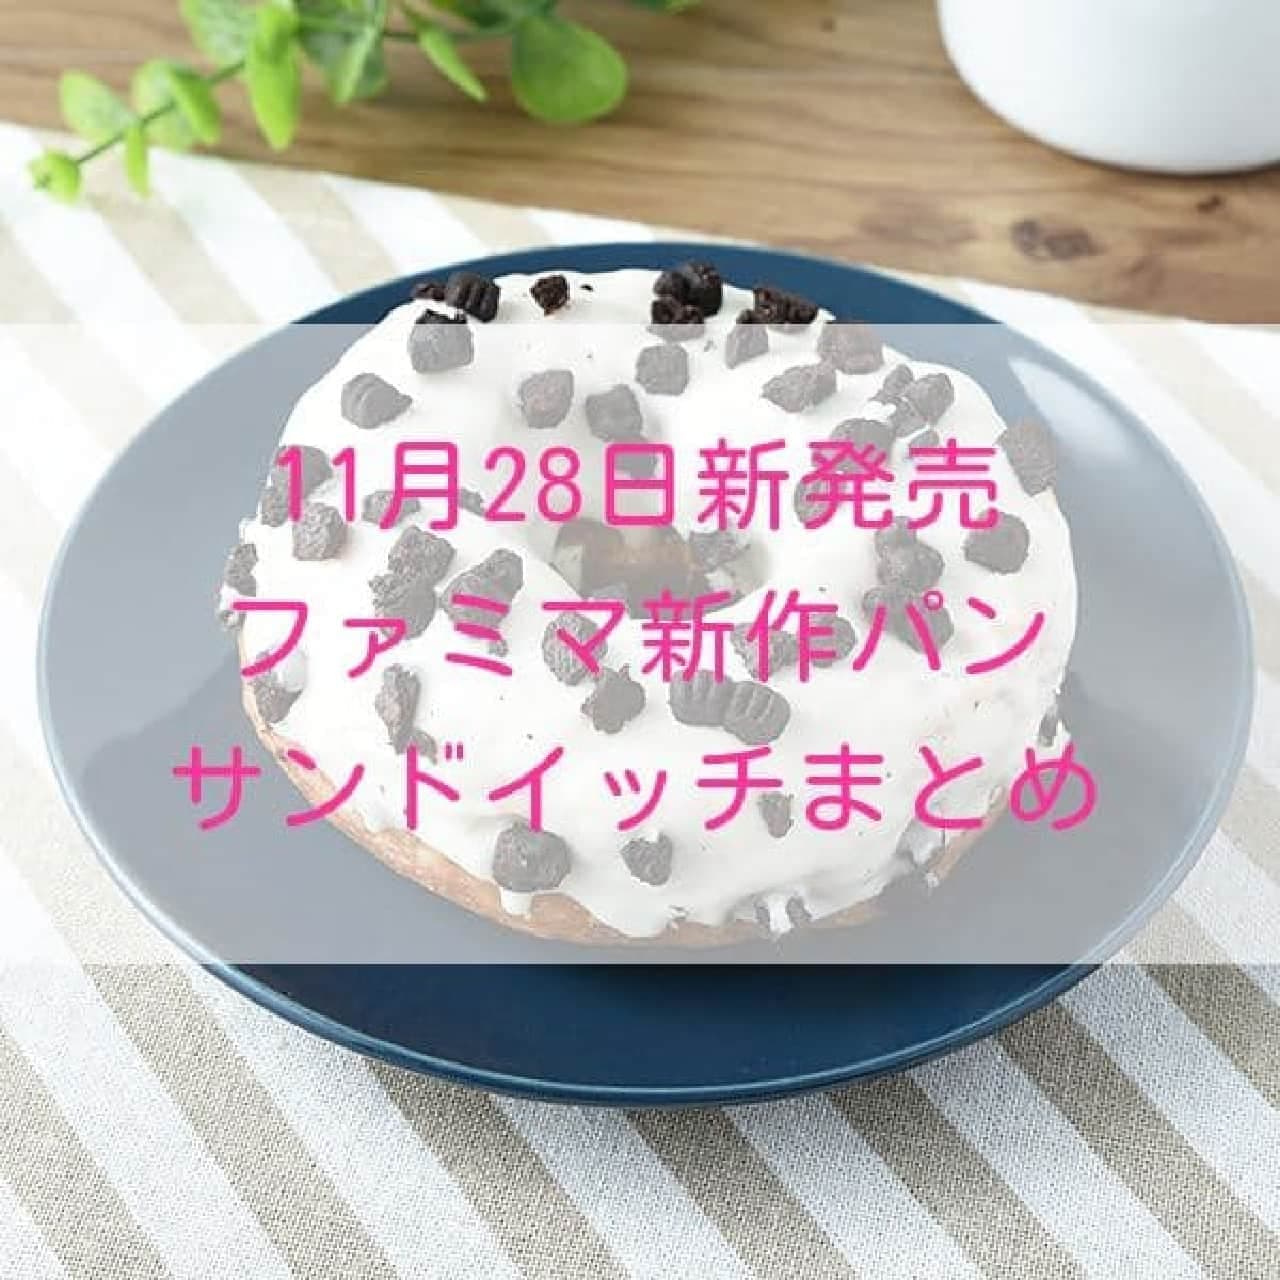 【11月28日新発売】ファミマ 新作パン・サンドイッチまとめ